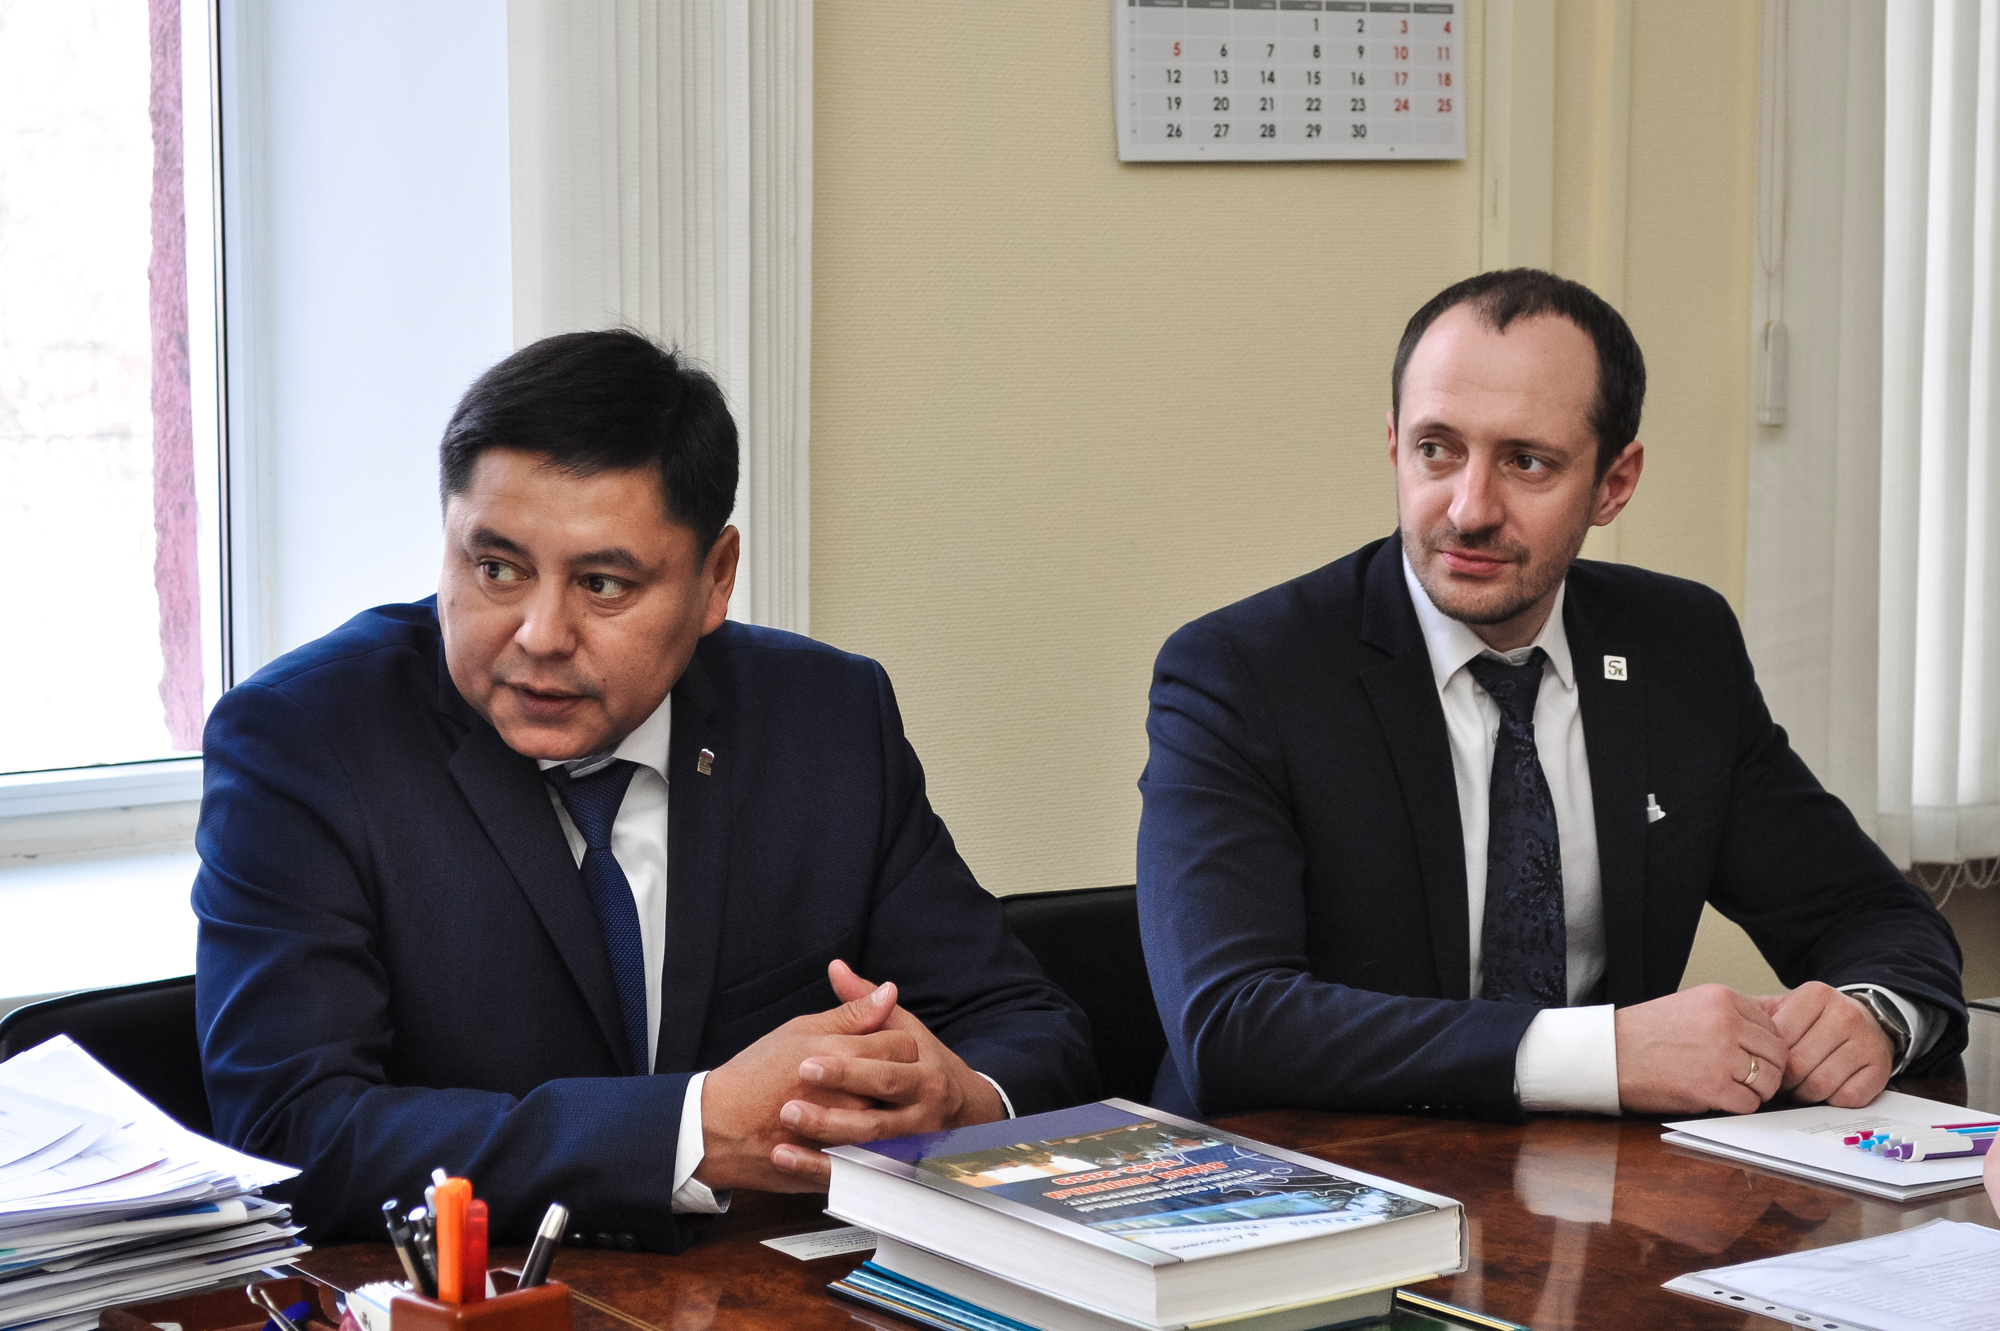 Подписание меморандума между опорным вузом и Региональной общественной организацией Казахстана, фотография: В. Шигина